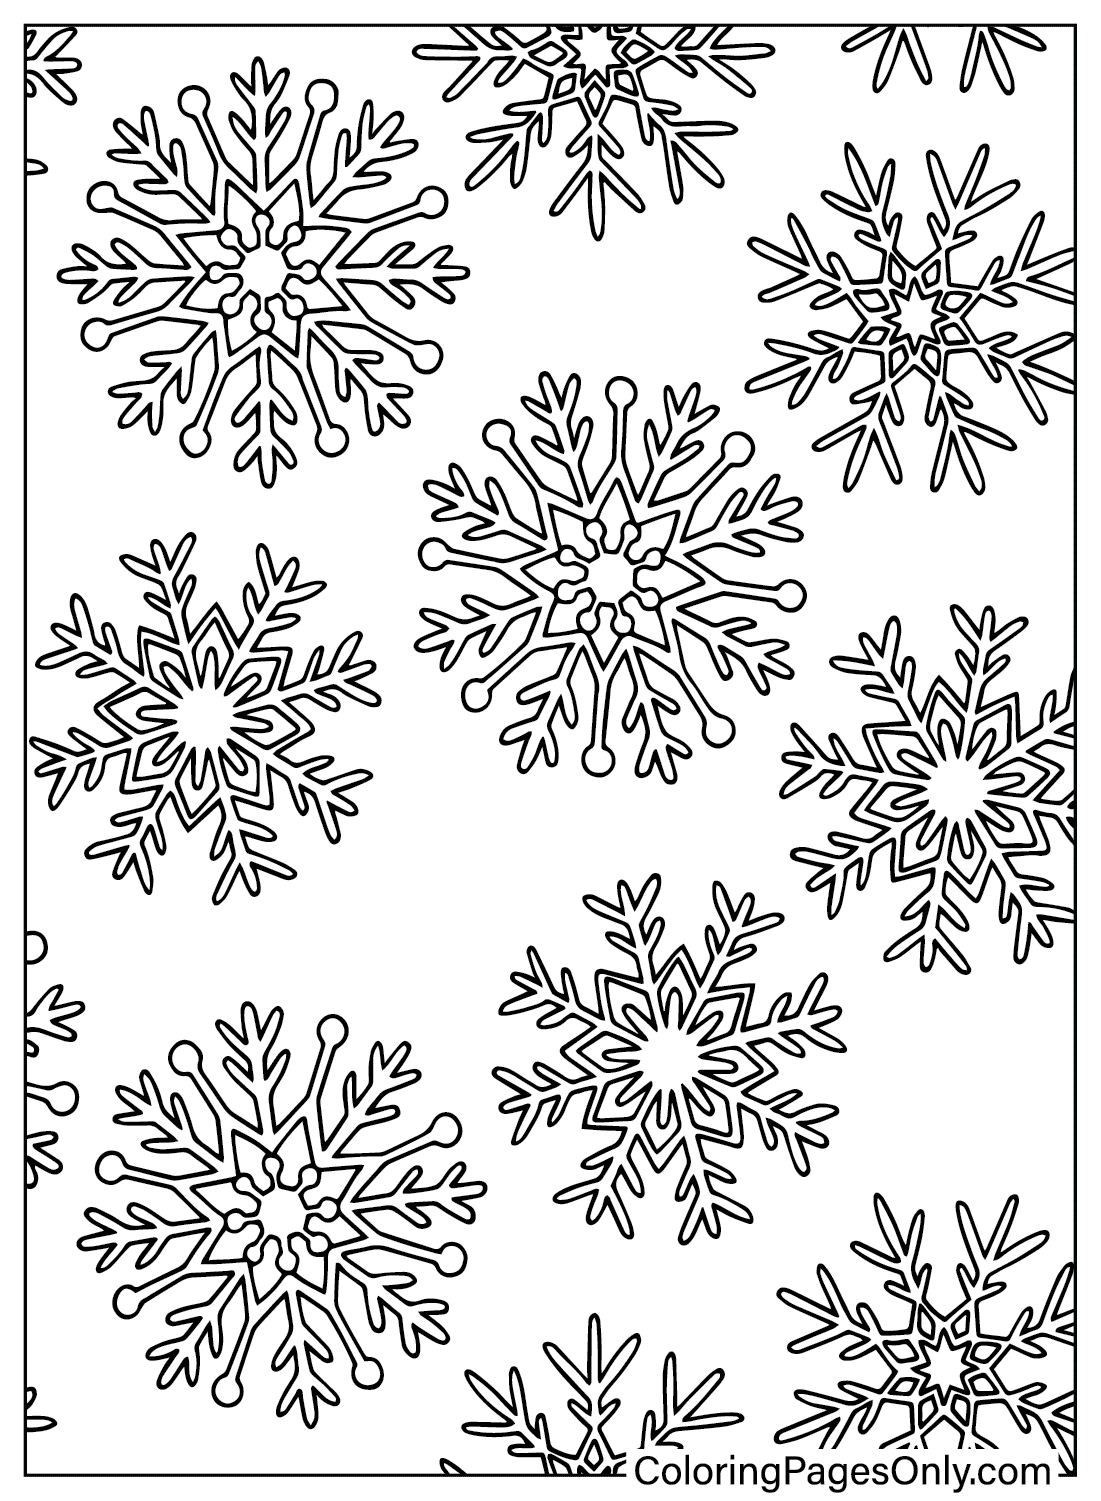 Página para colorear de copo de nieve gratis de Snowflake